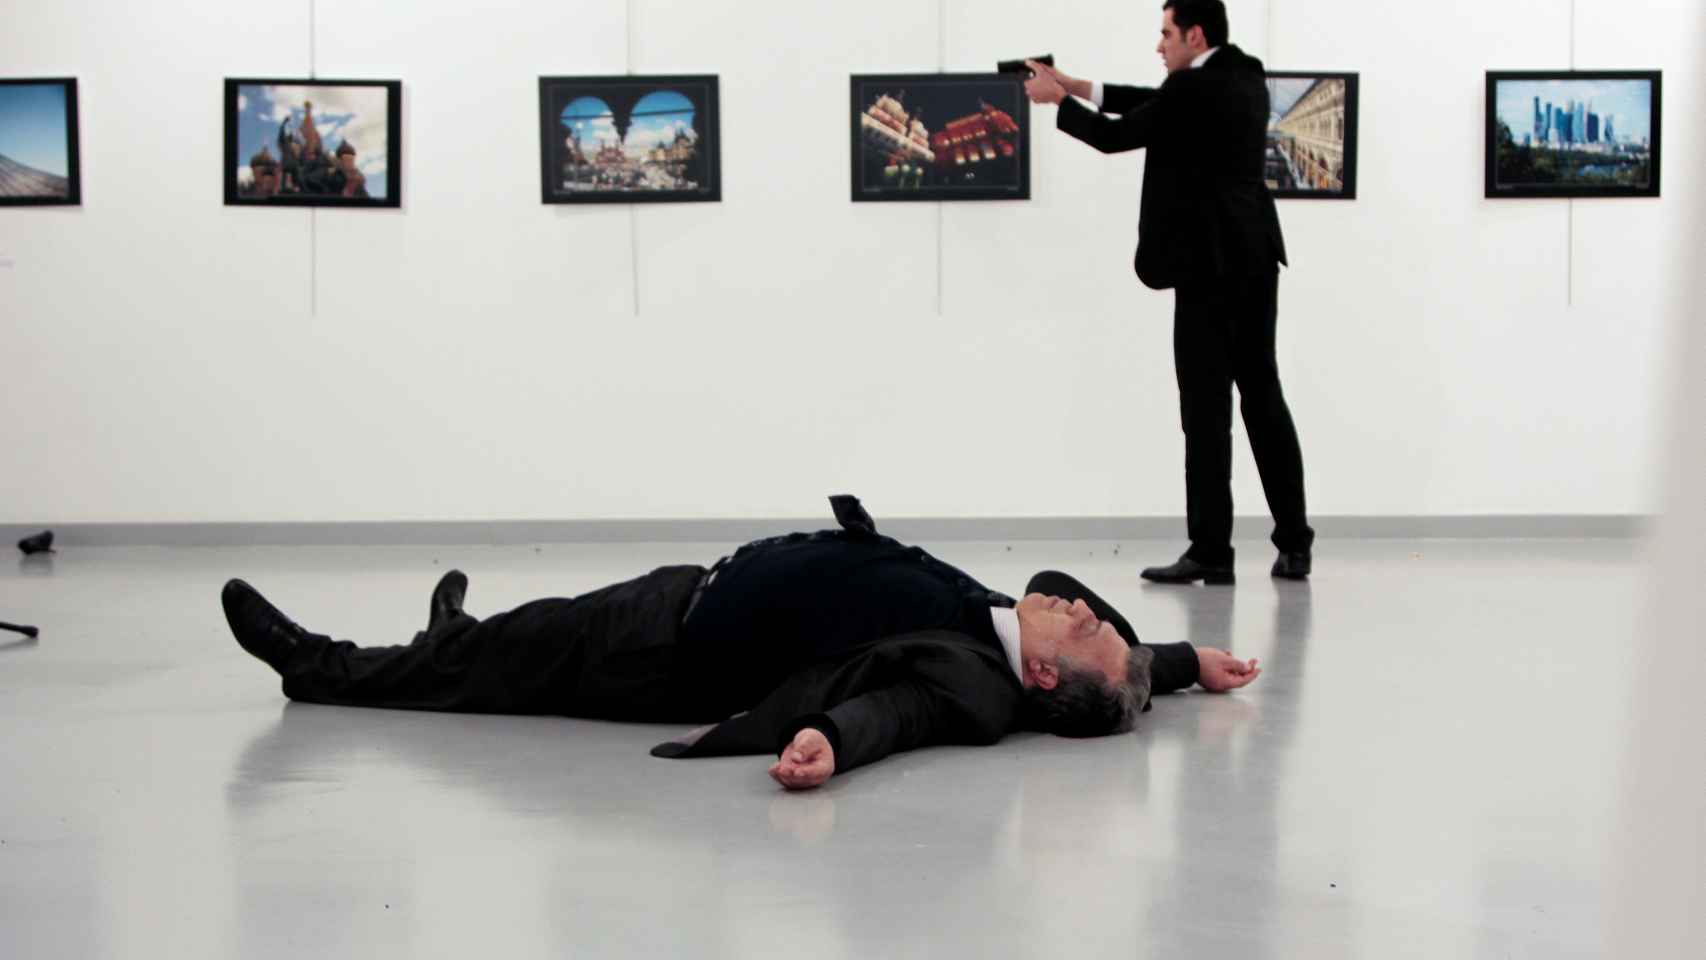 El embajador ruso en Turquía, en el suelo tras ser disparado por Mevlut Mert Altintas.